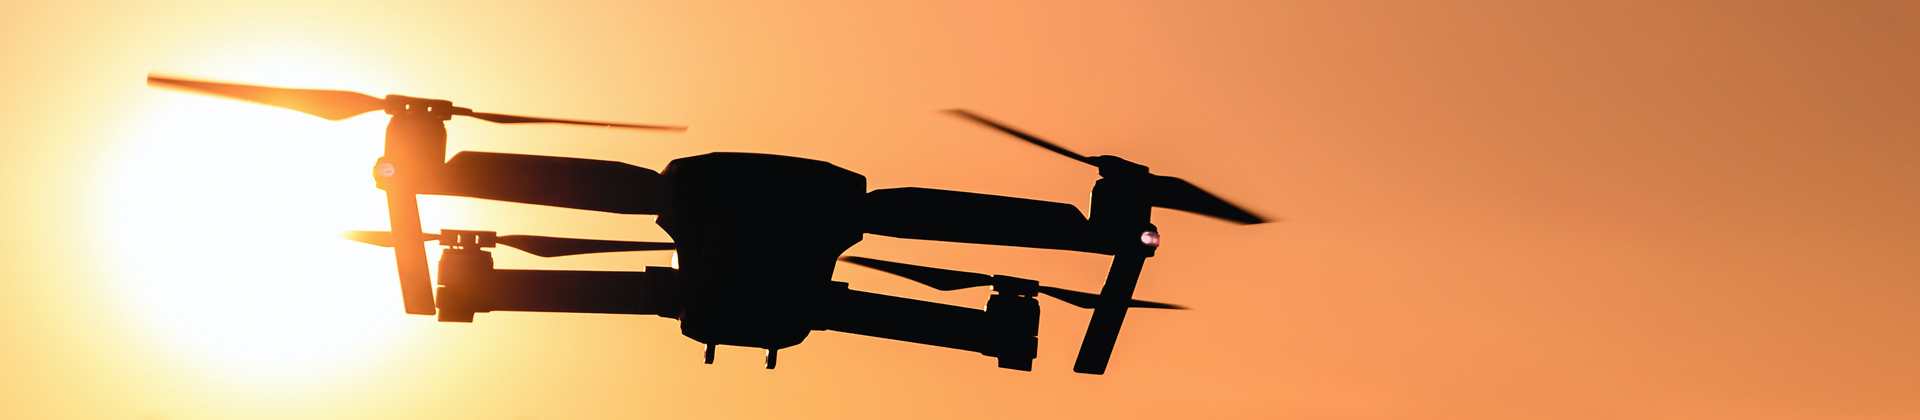 Showreel Drone 2014